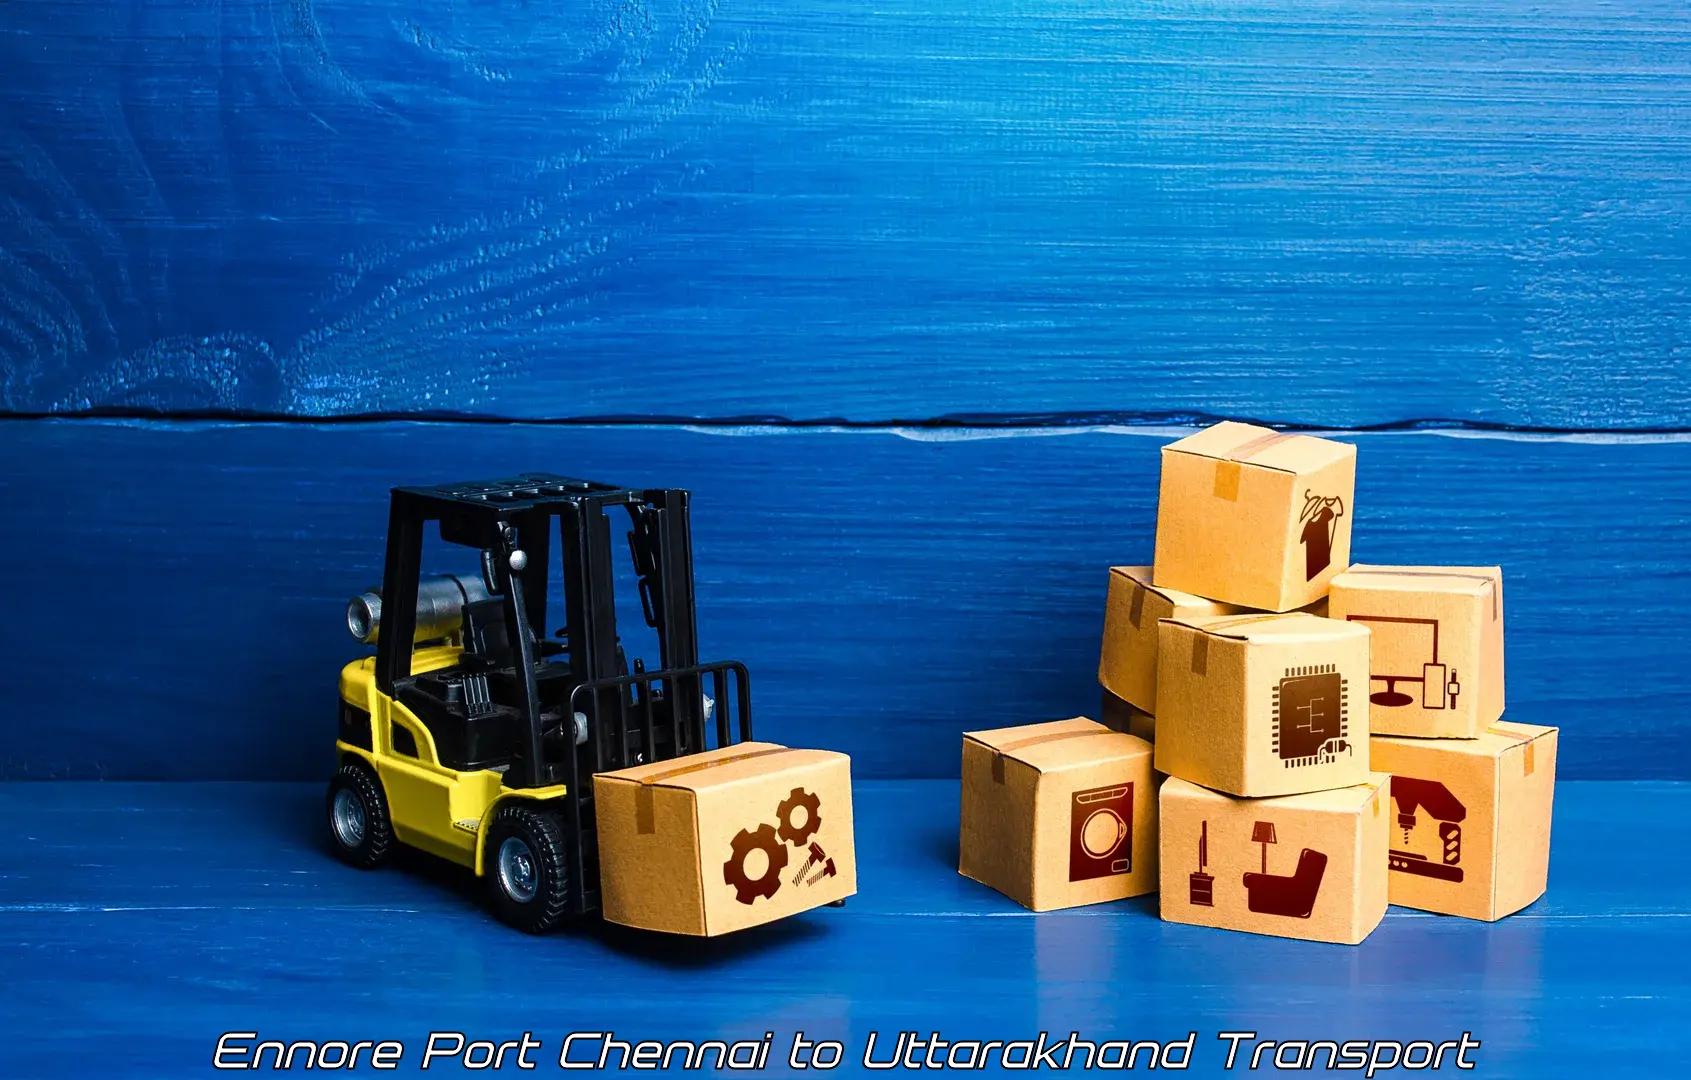 Interstate goods transport Ennore Port Chennai to Uttarakhand